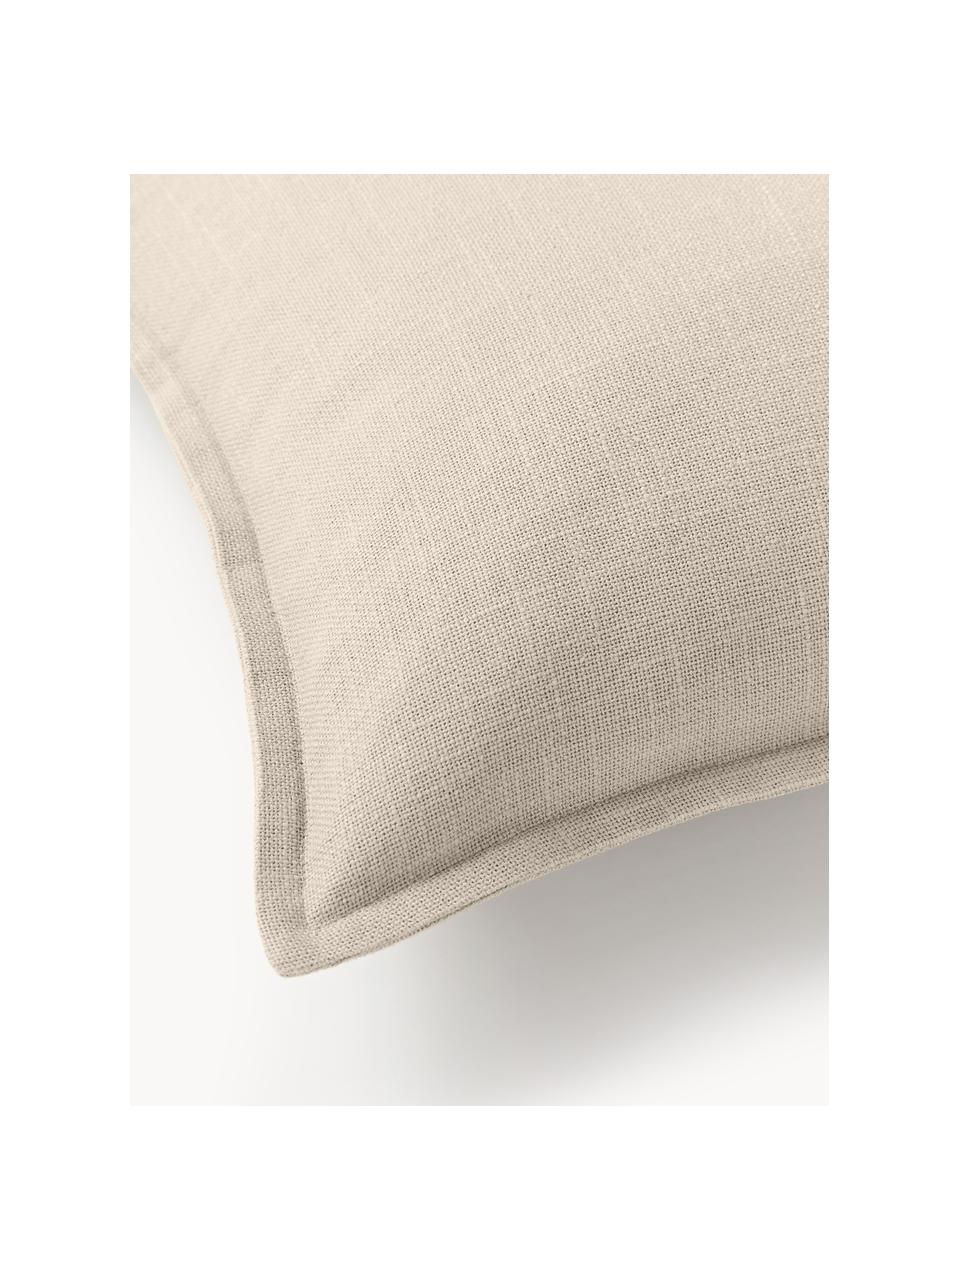 Poszewka na poduszkę z bawełny Vicky, 100% bawełna, Beżowy, S 30 x D 50 cm